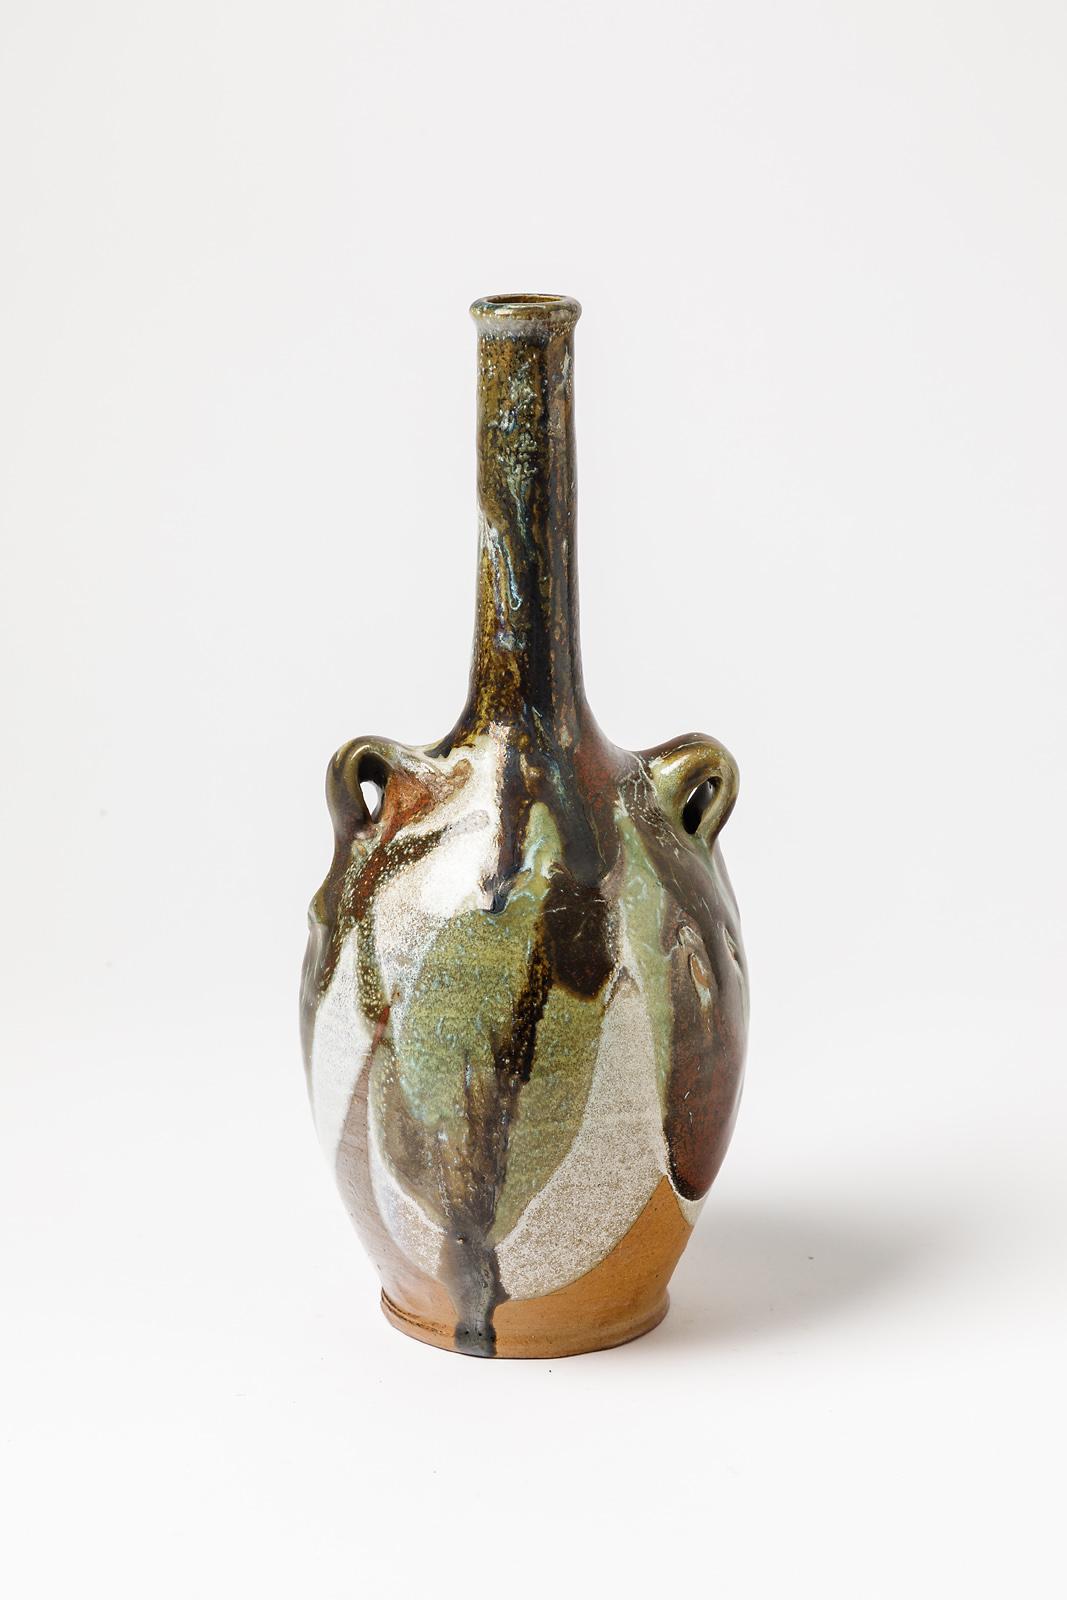 JM DOIX

Originalflasche oder -vase aus Steinzeug von einem französischen Künstler

Signiert unter dem Sockel

Perfekter Originalzustand
Abstrakt schwarz grün und weiß Steinzeug Keramik Glasuren Farben

Maße: Höhe 28 cm
Groß 12 cm.